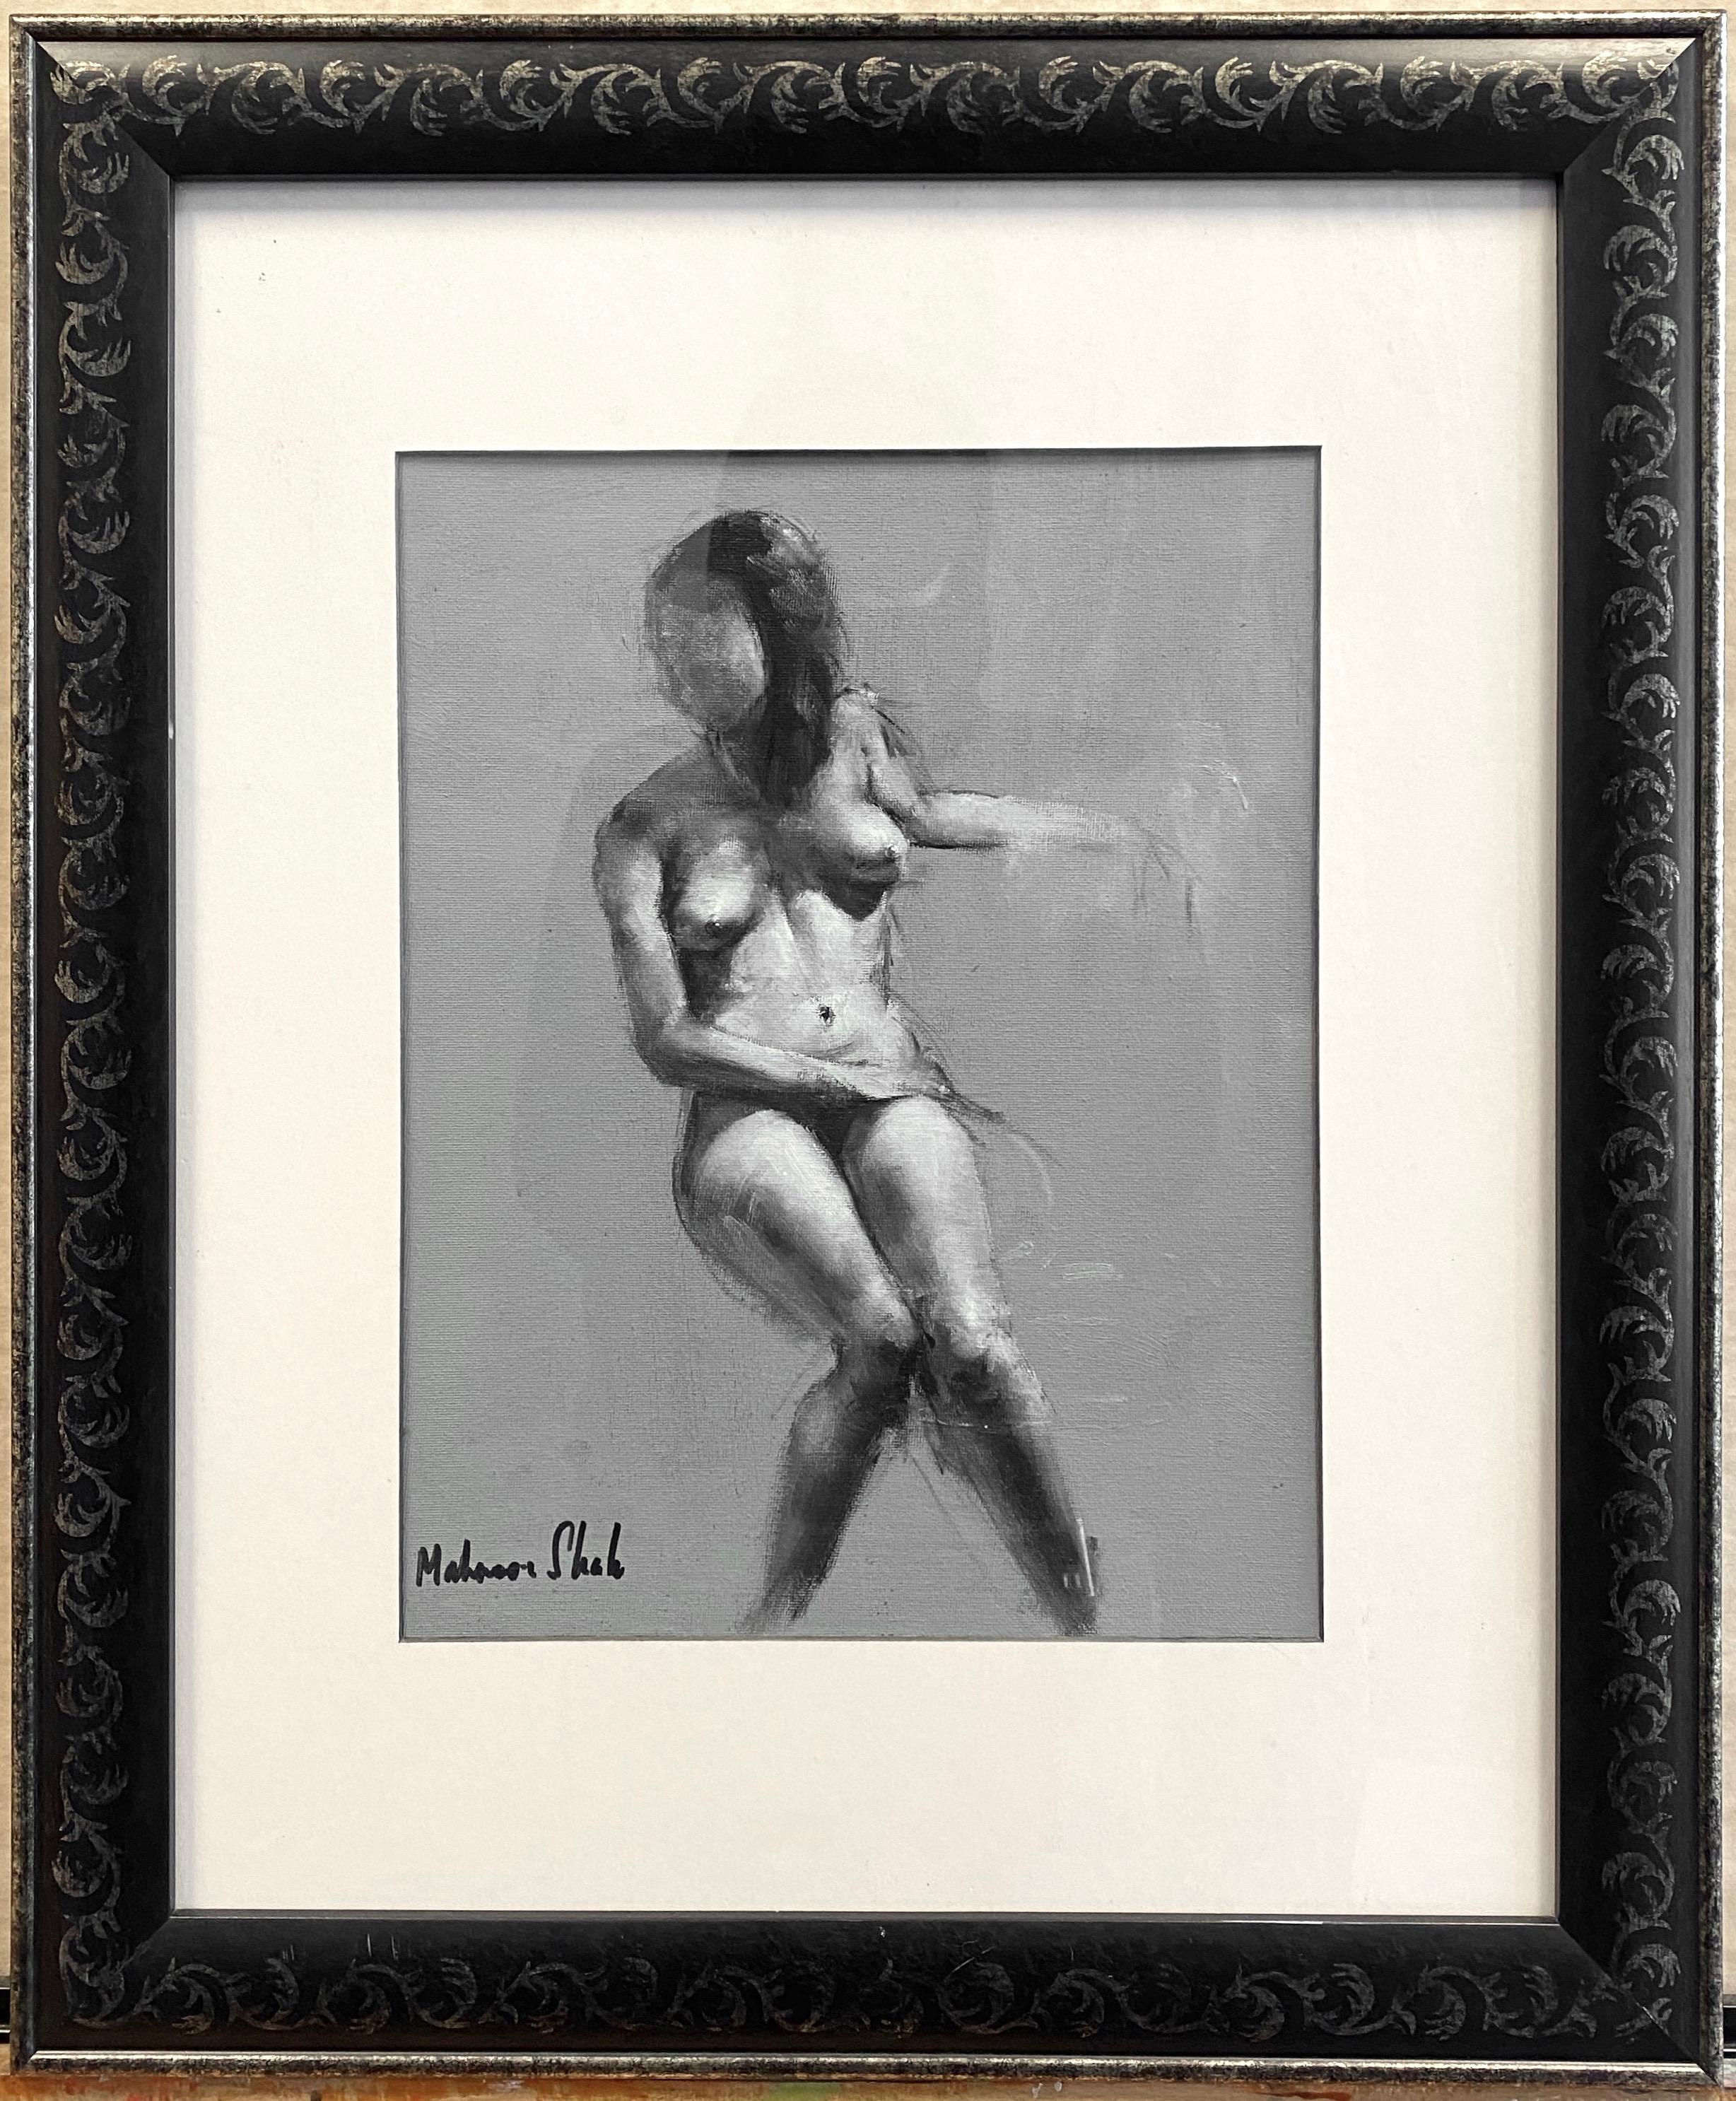 Une étude de nu sans titre du début des années 2010, peinture impressionniste sur panneau d'art par l'artiste pakistanais bien connu Mahnoor Shah.

Figure féminine délicatement représentée dans une pose assise décontractée, rendue dans des tons de